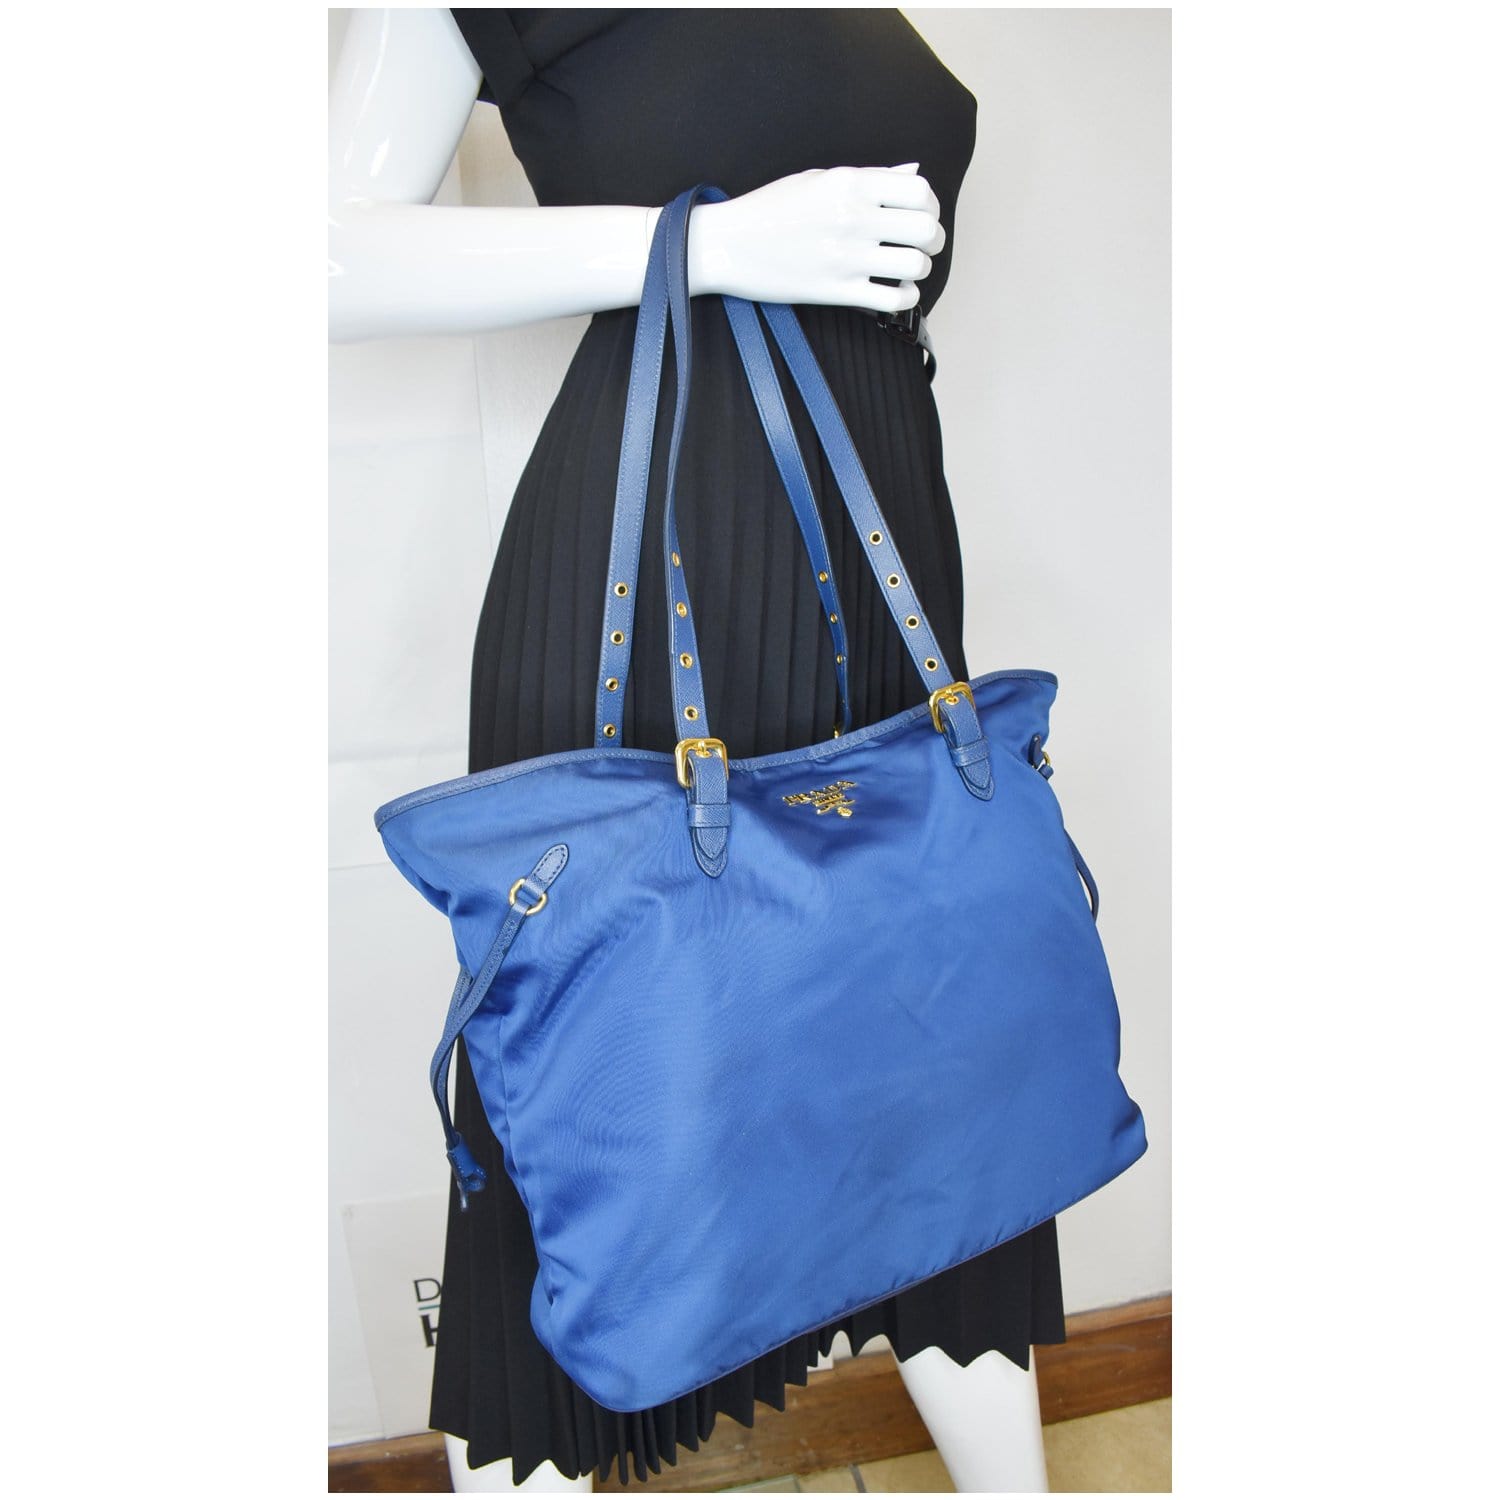 Prada Tessuto Nylon Travel Bag VA0994 Blue (Baltico) – BRANDS N BAGS